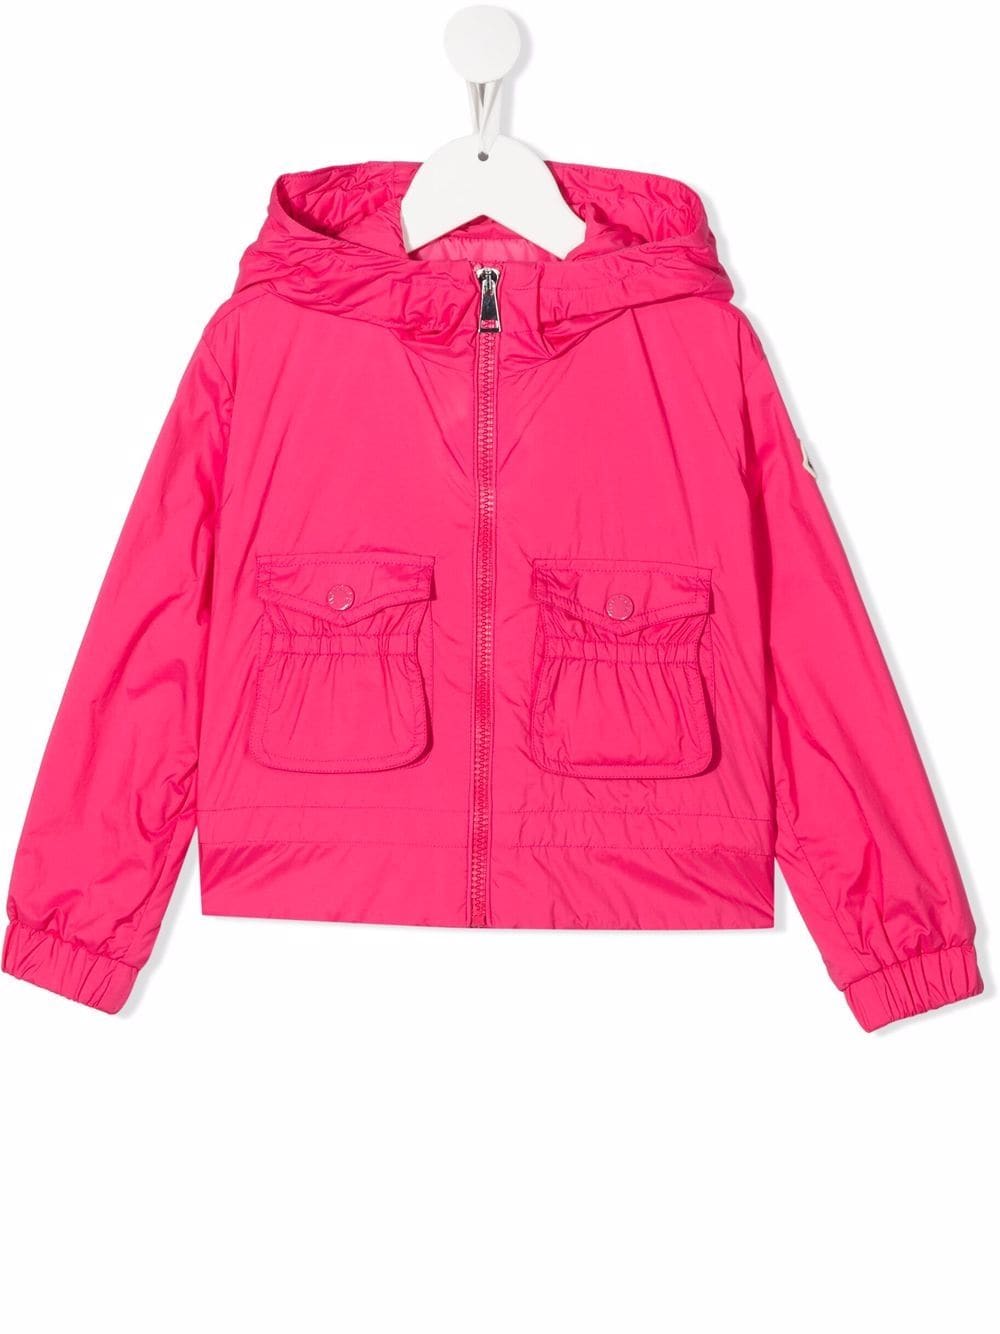 Moncler Enfant hooded lightweight rain jacket - Pink von Moncler Enfant